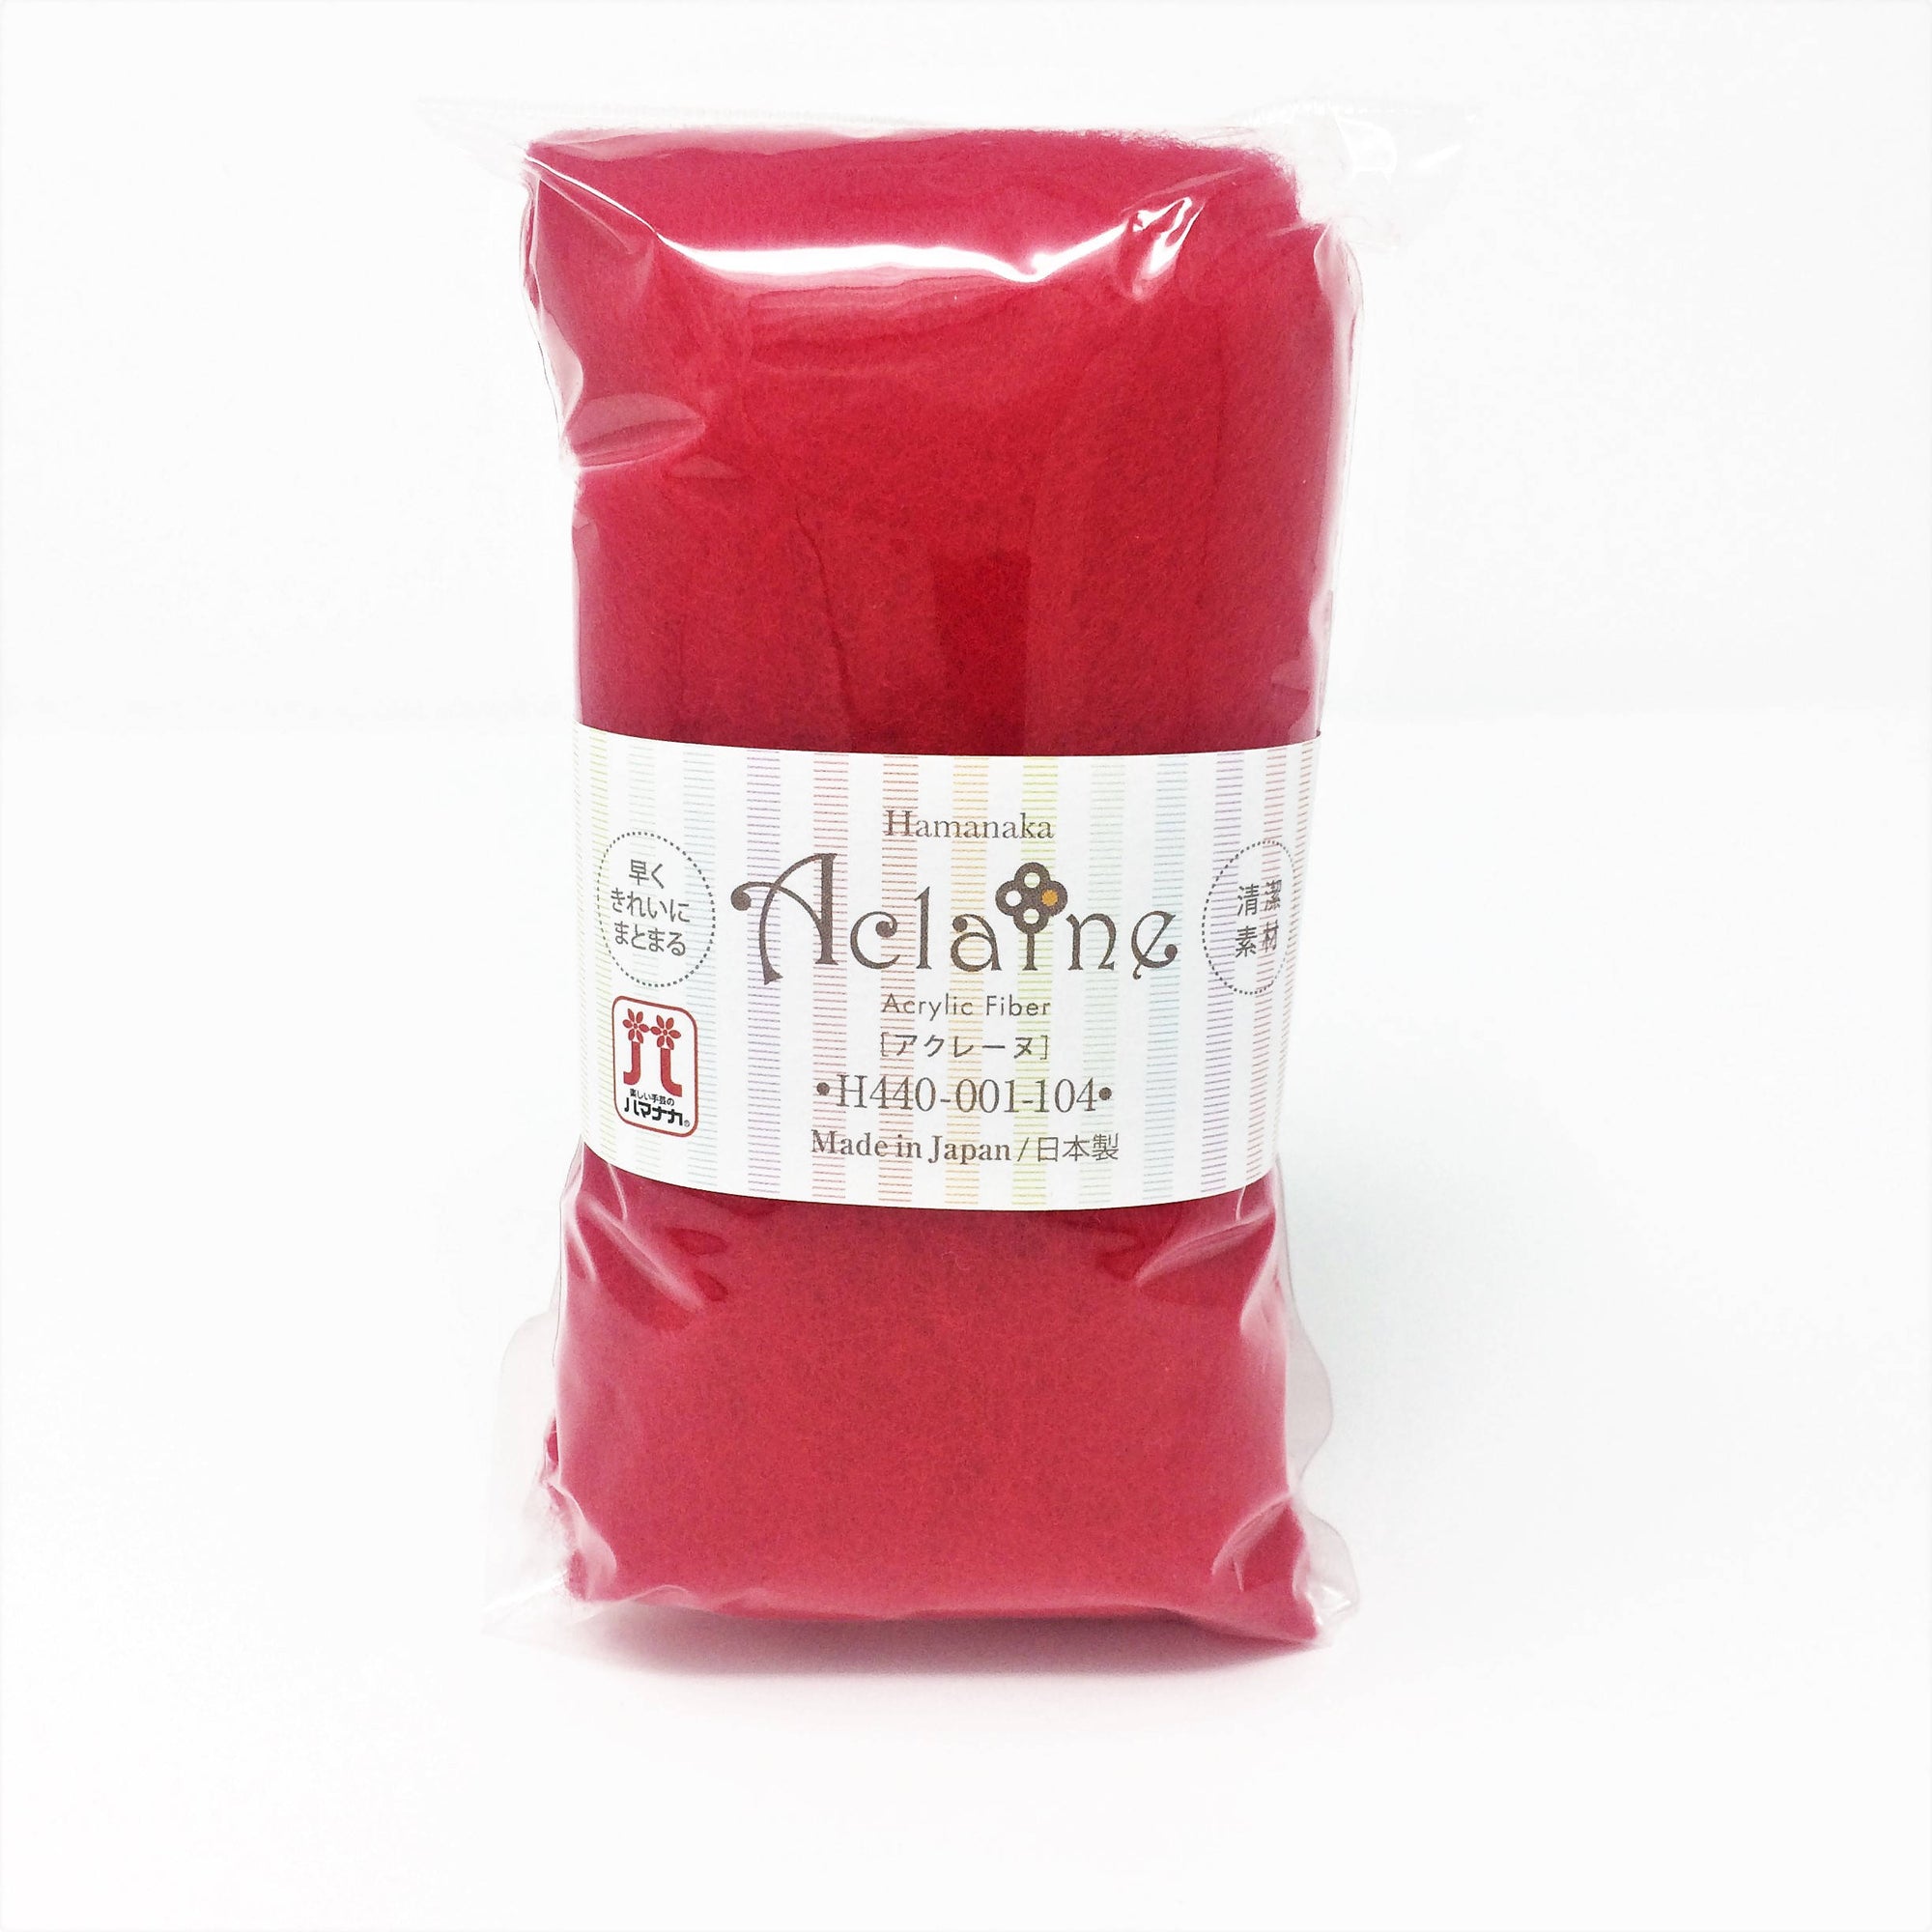 Japanese Hamanaka Aclaine Acrylic Fibre for Needle Felting. 15g pack - Red (#104)